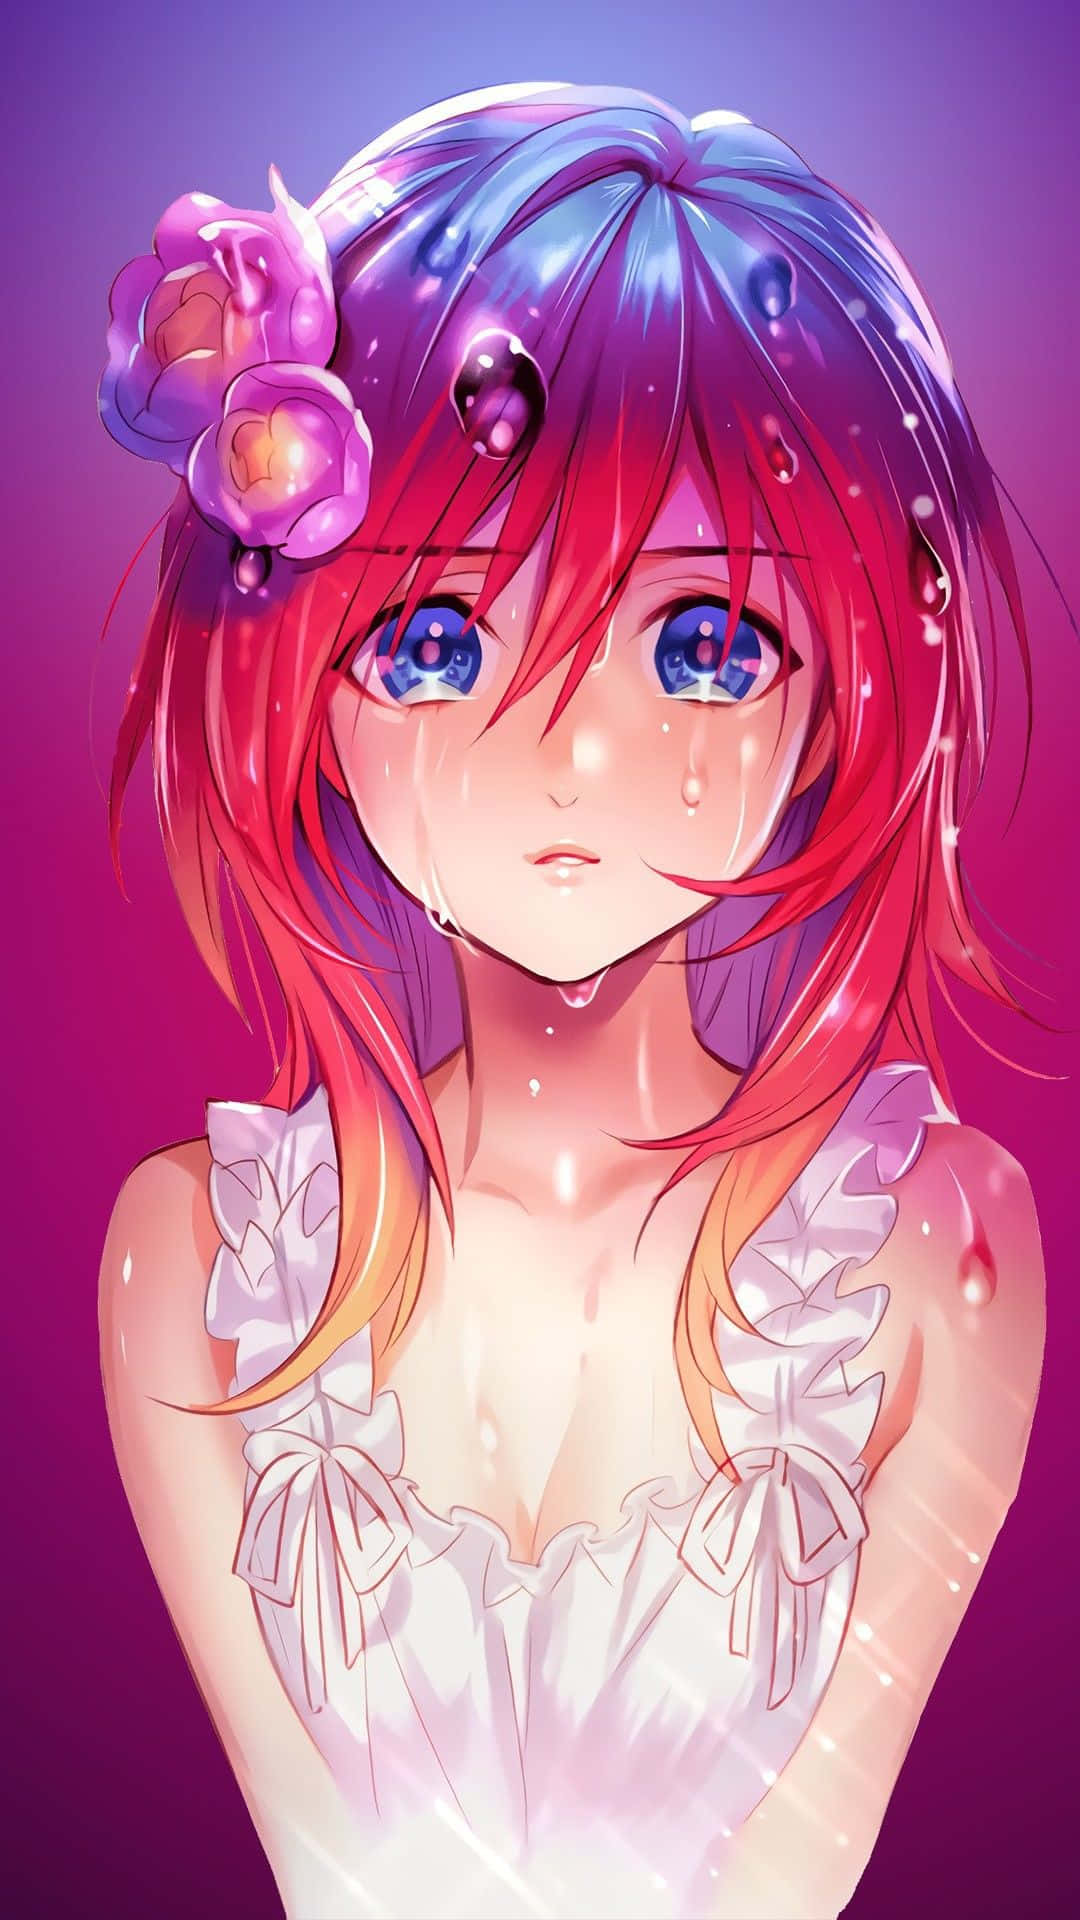 100+] Sad Crying Anime Wallpapers